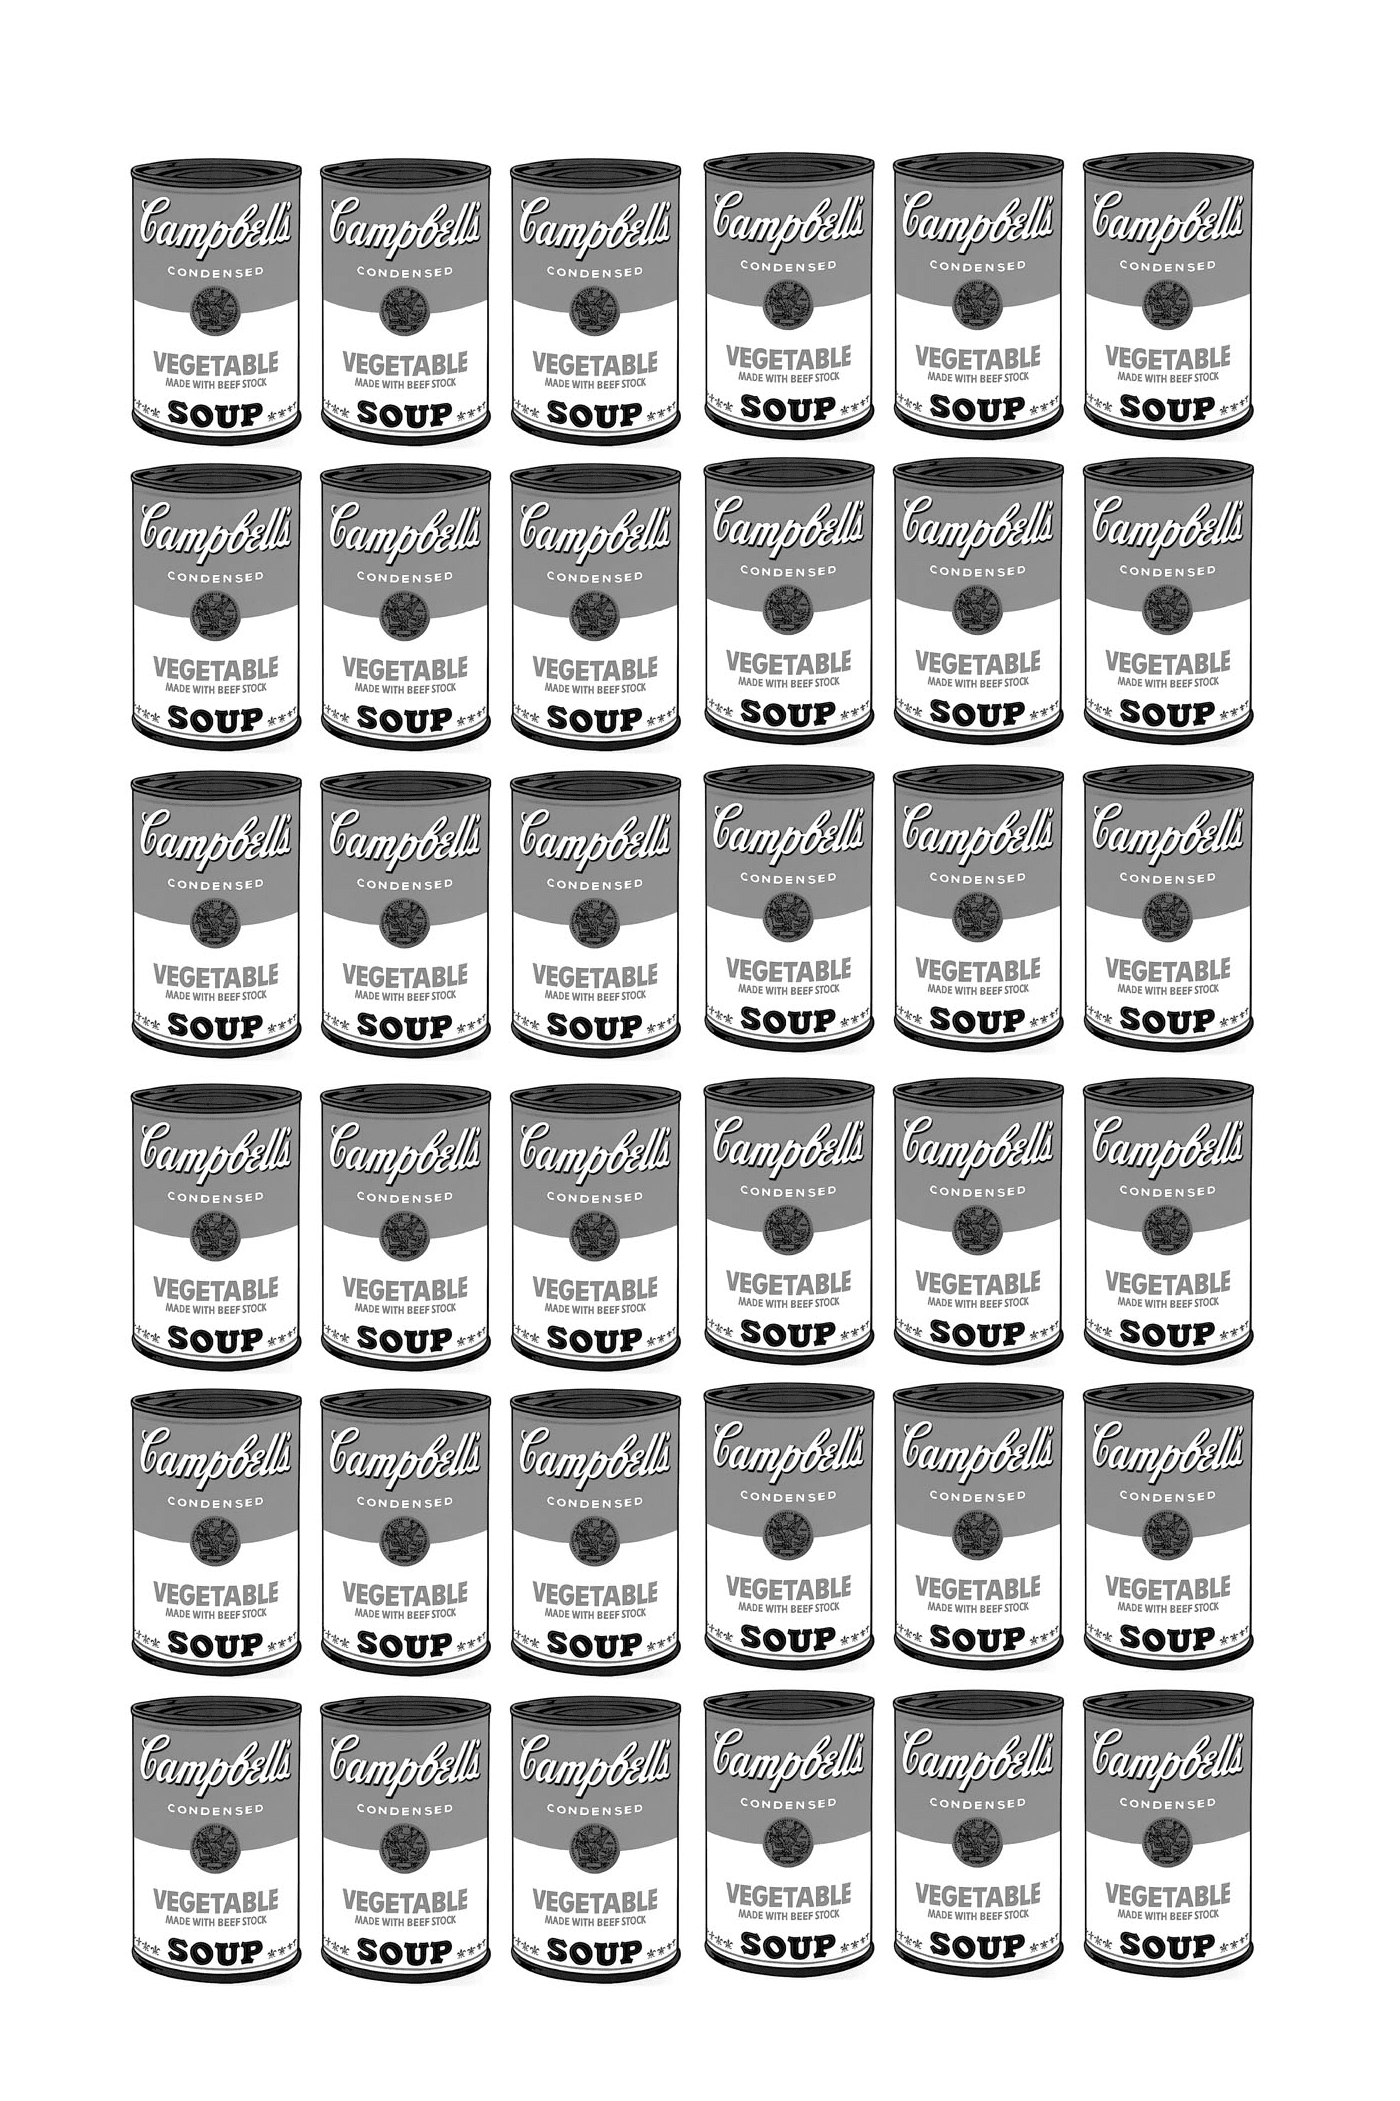  Серия коробок с супом из Кэмпбелла, полностью черным и белым, согласно Уорхолу 